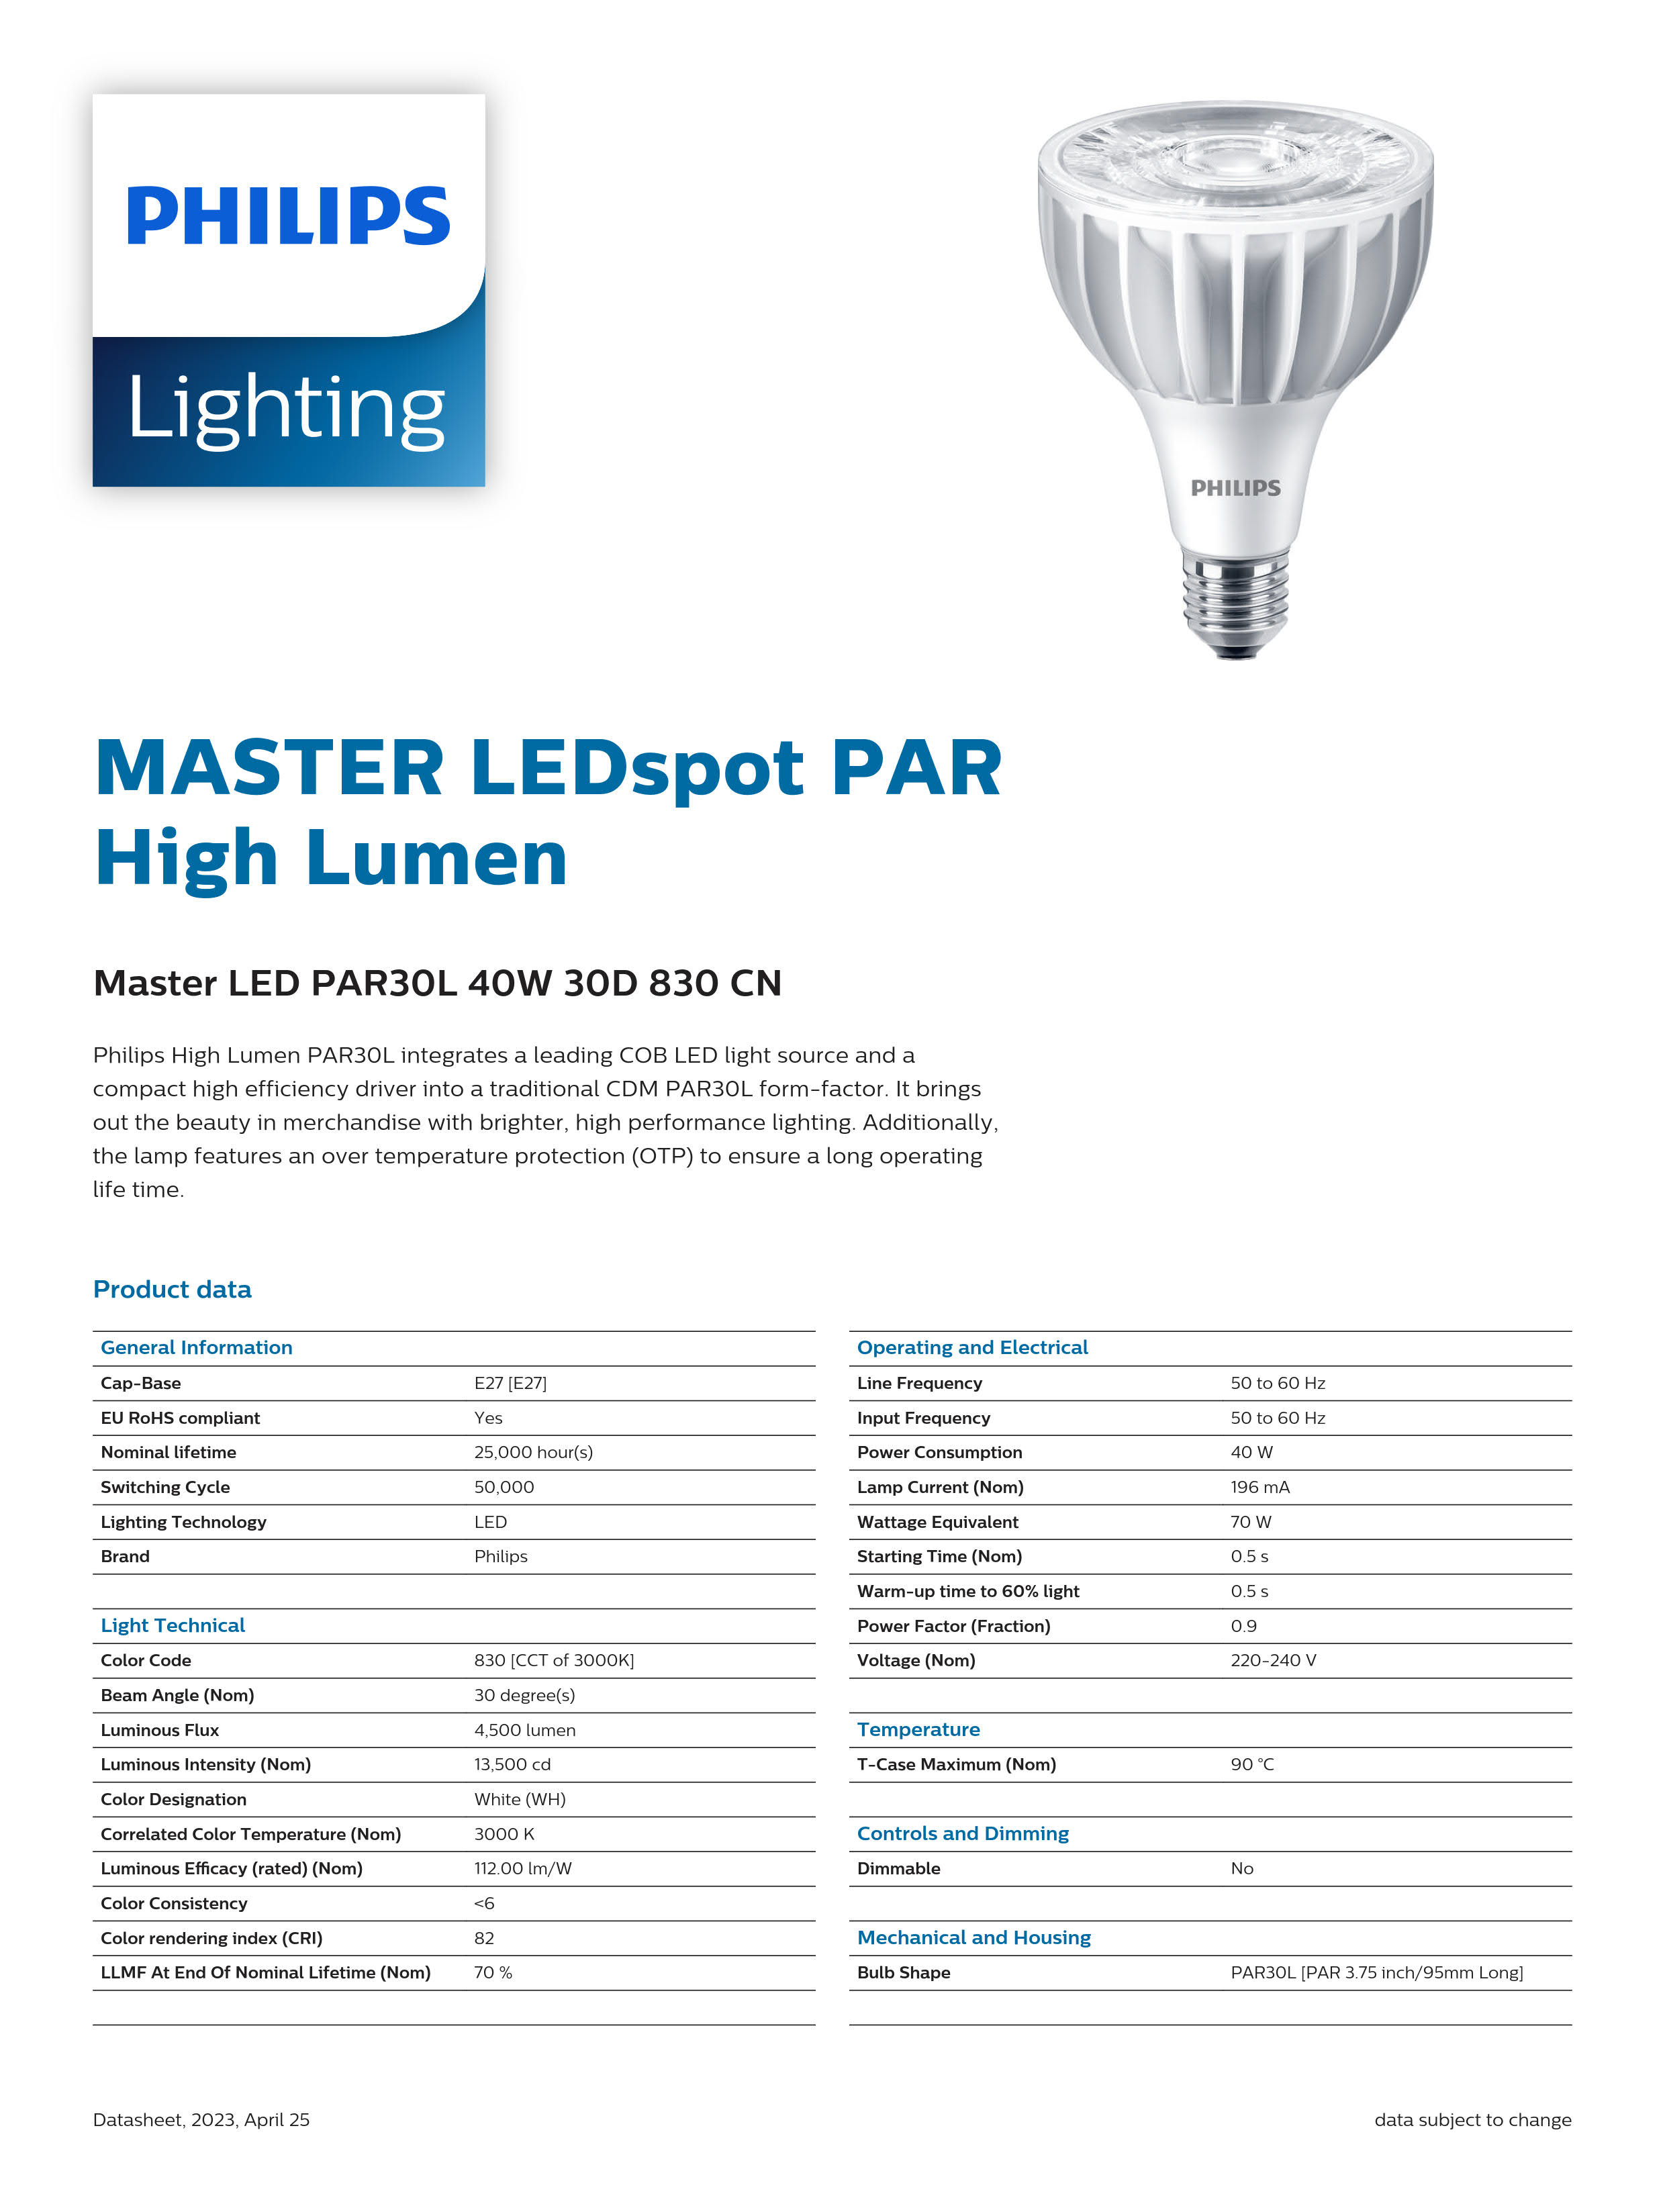 PHILIPS Master LED PAR30L 40W 30D 830 CN 929001374810